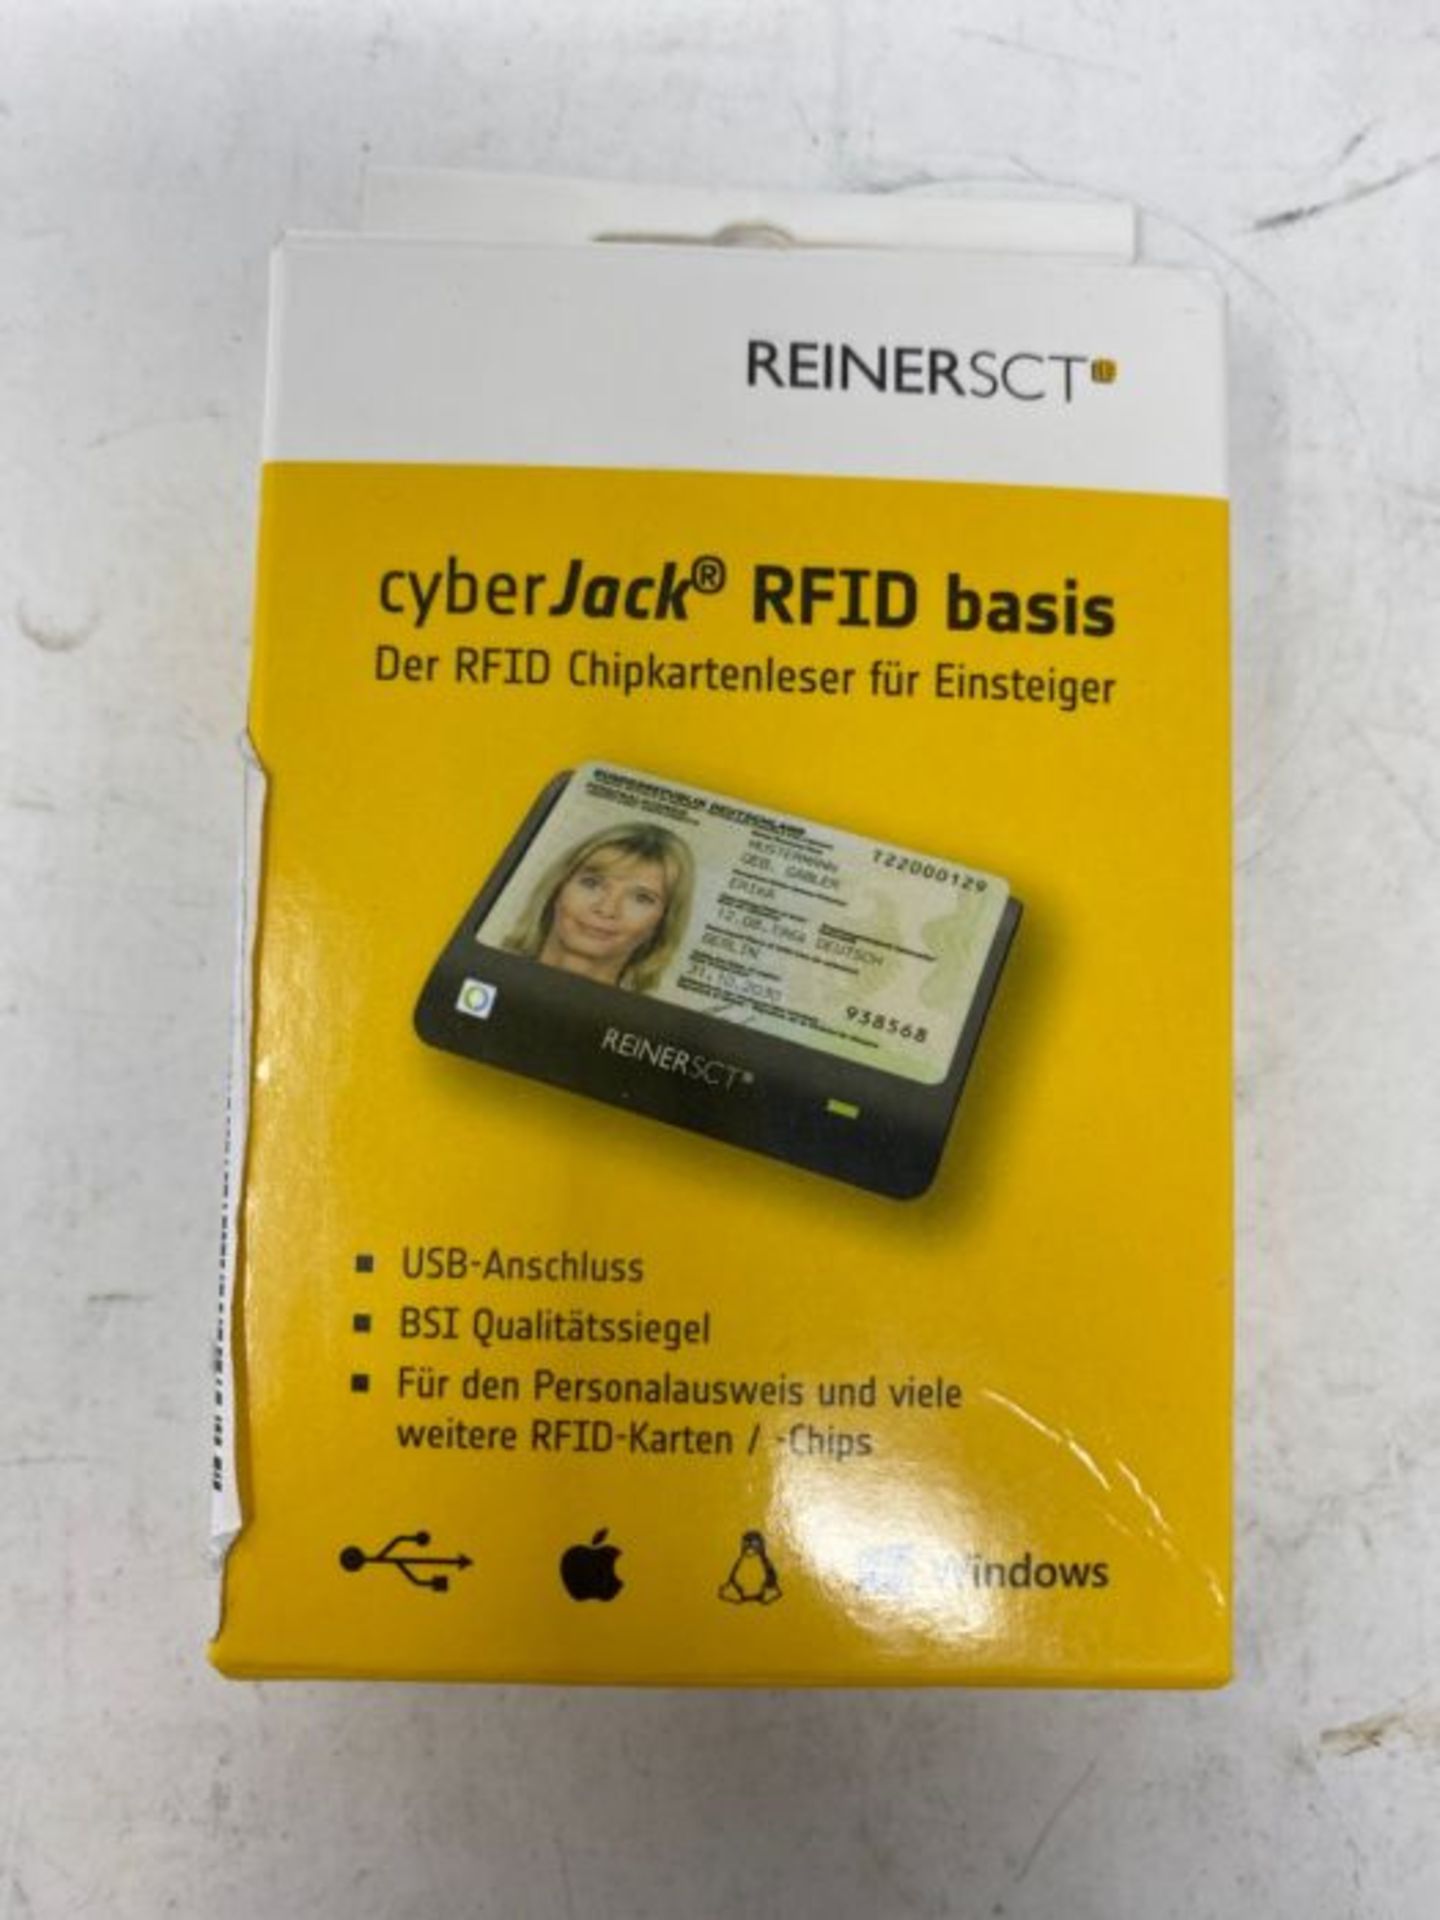 Reiner SCT cyberJack RFID Basis nPA Smart Card Reader eID BSI-Certified with loginCard - Image 2 of 3